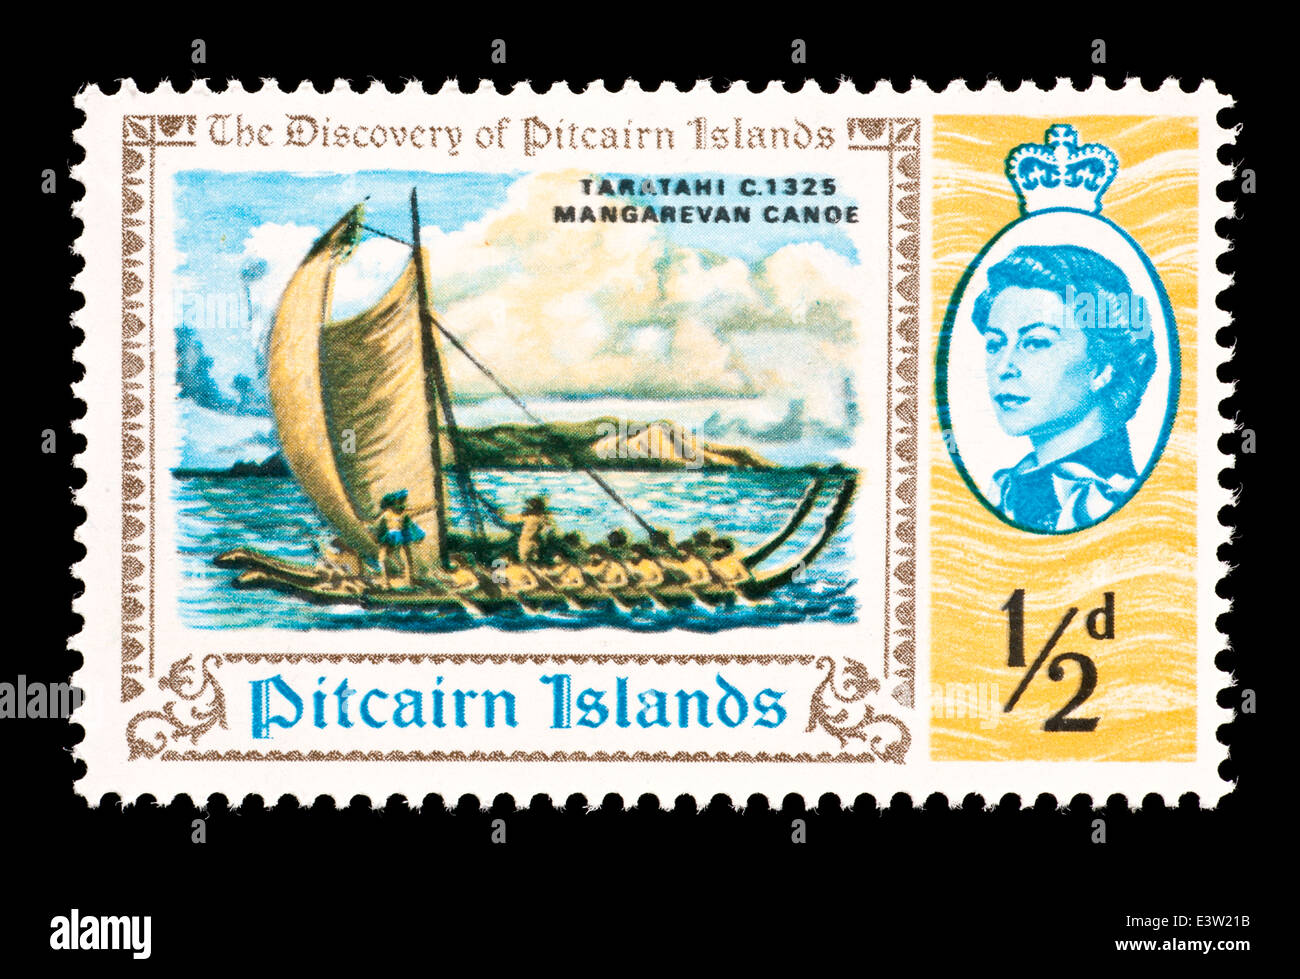 Sello de las Islas Pitcairn Mangarevan describiendo una canoa y la Isla de Pitcairn. Foto de stock